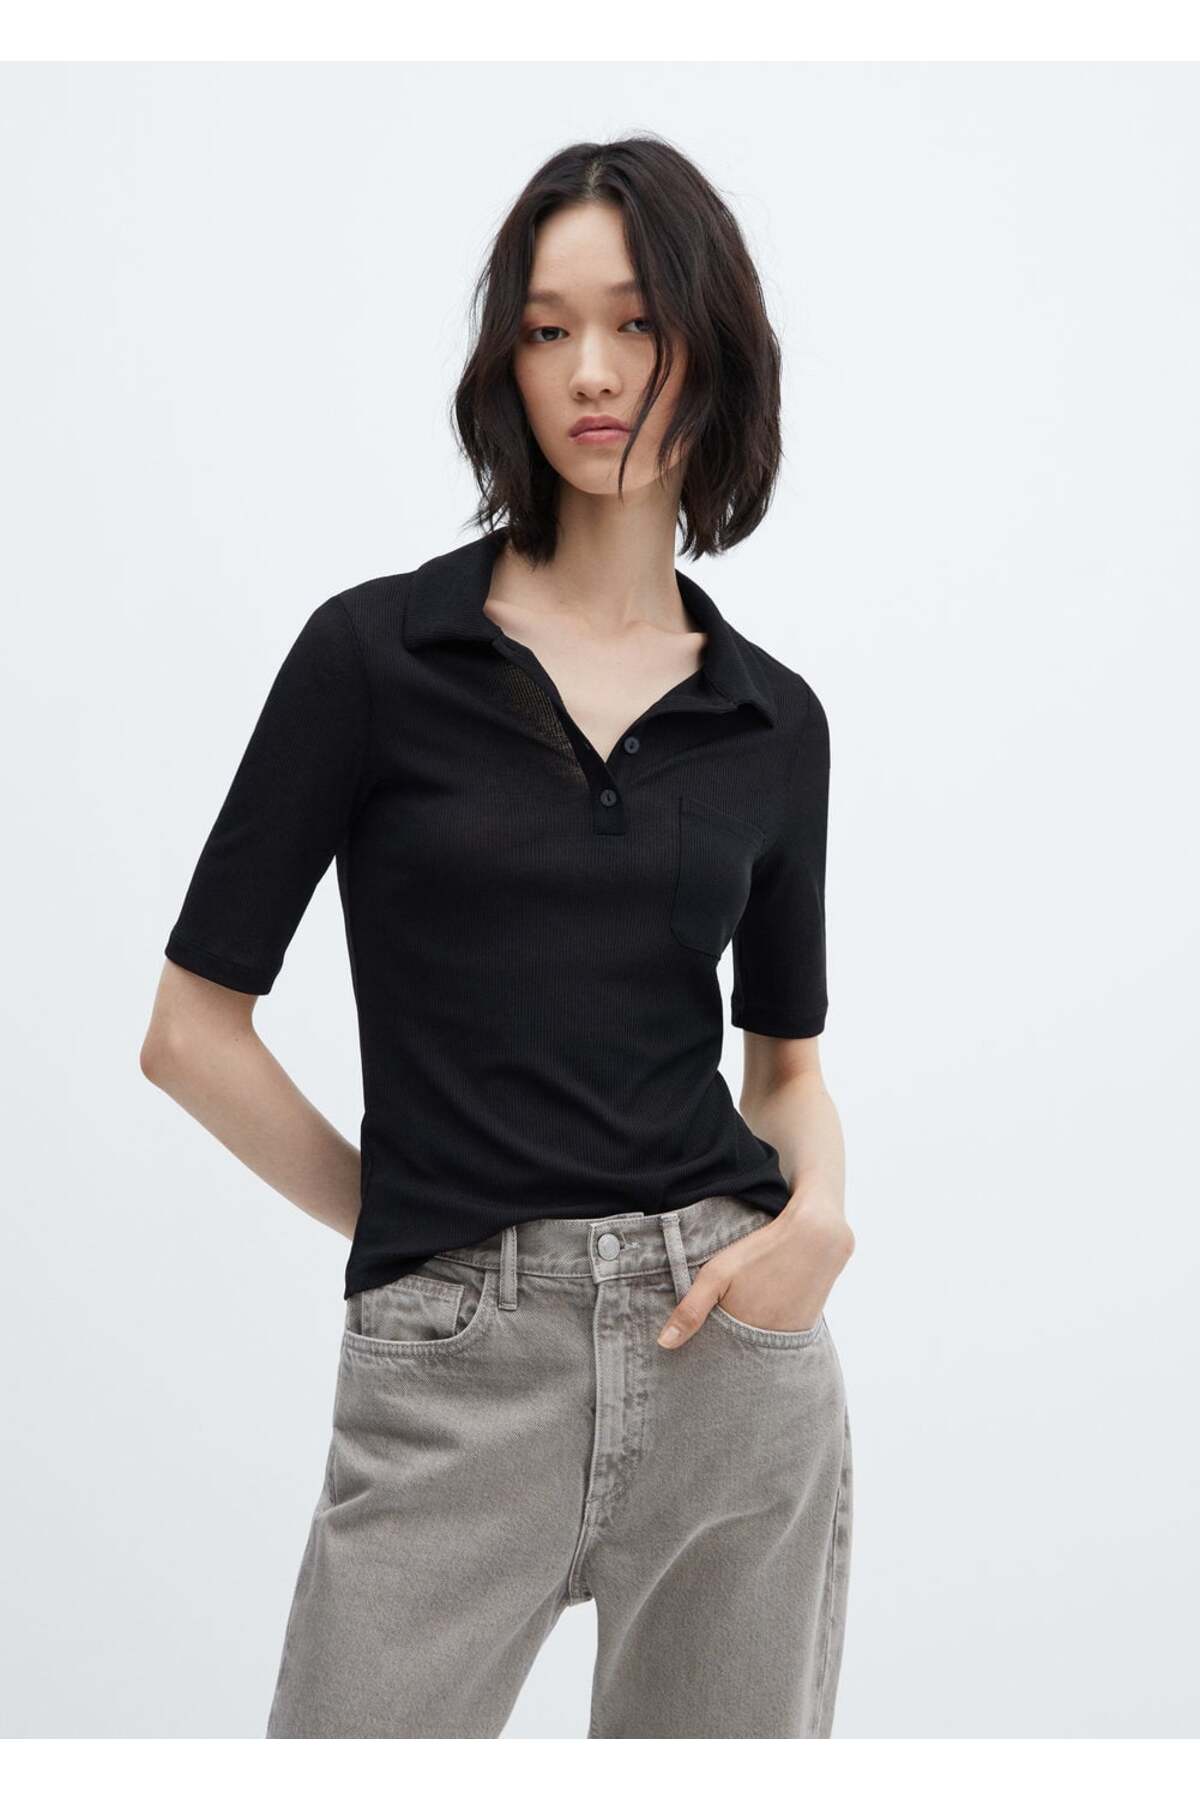 Рубашка поло на пуговицах с коротким рукавом Mango, черный женская рубашка поло на пуговицах с коротким рукавом